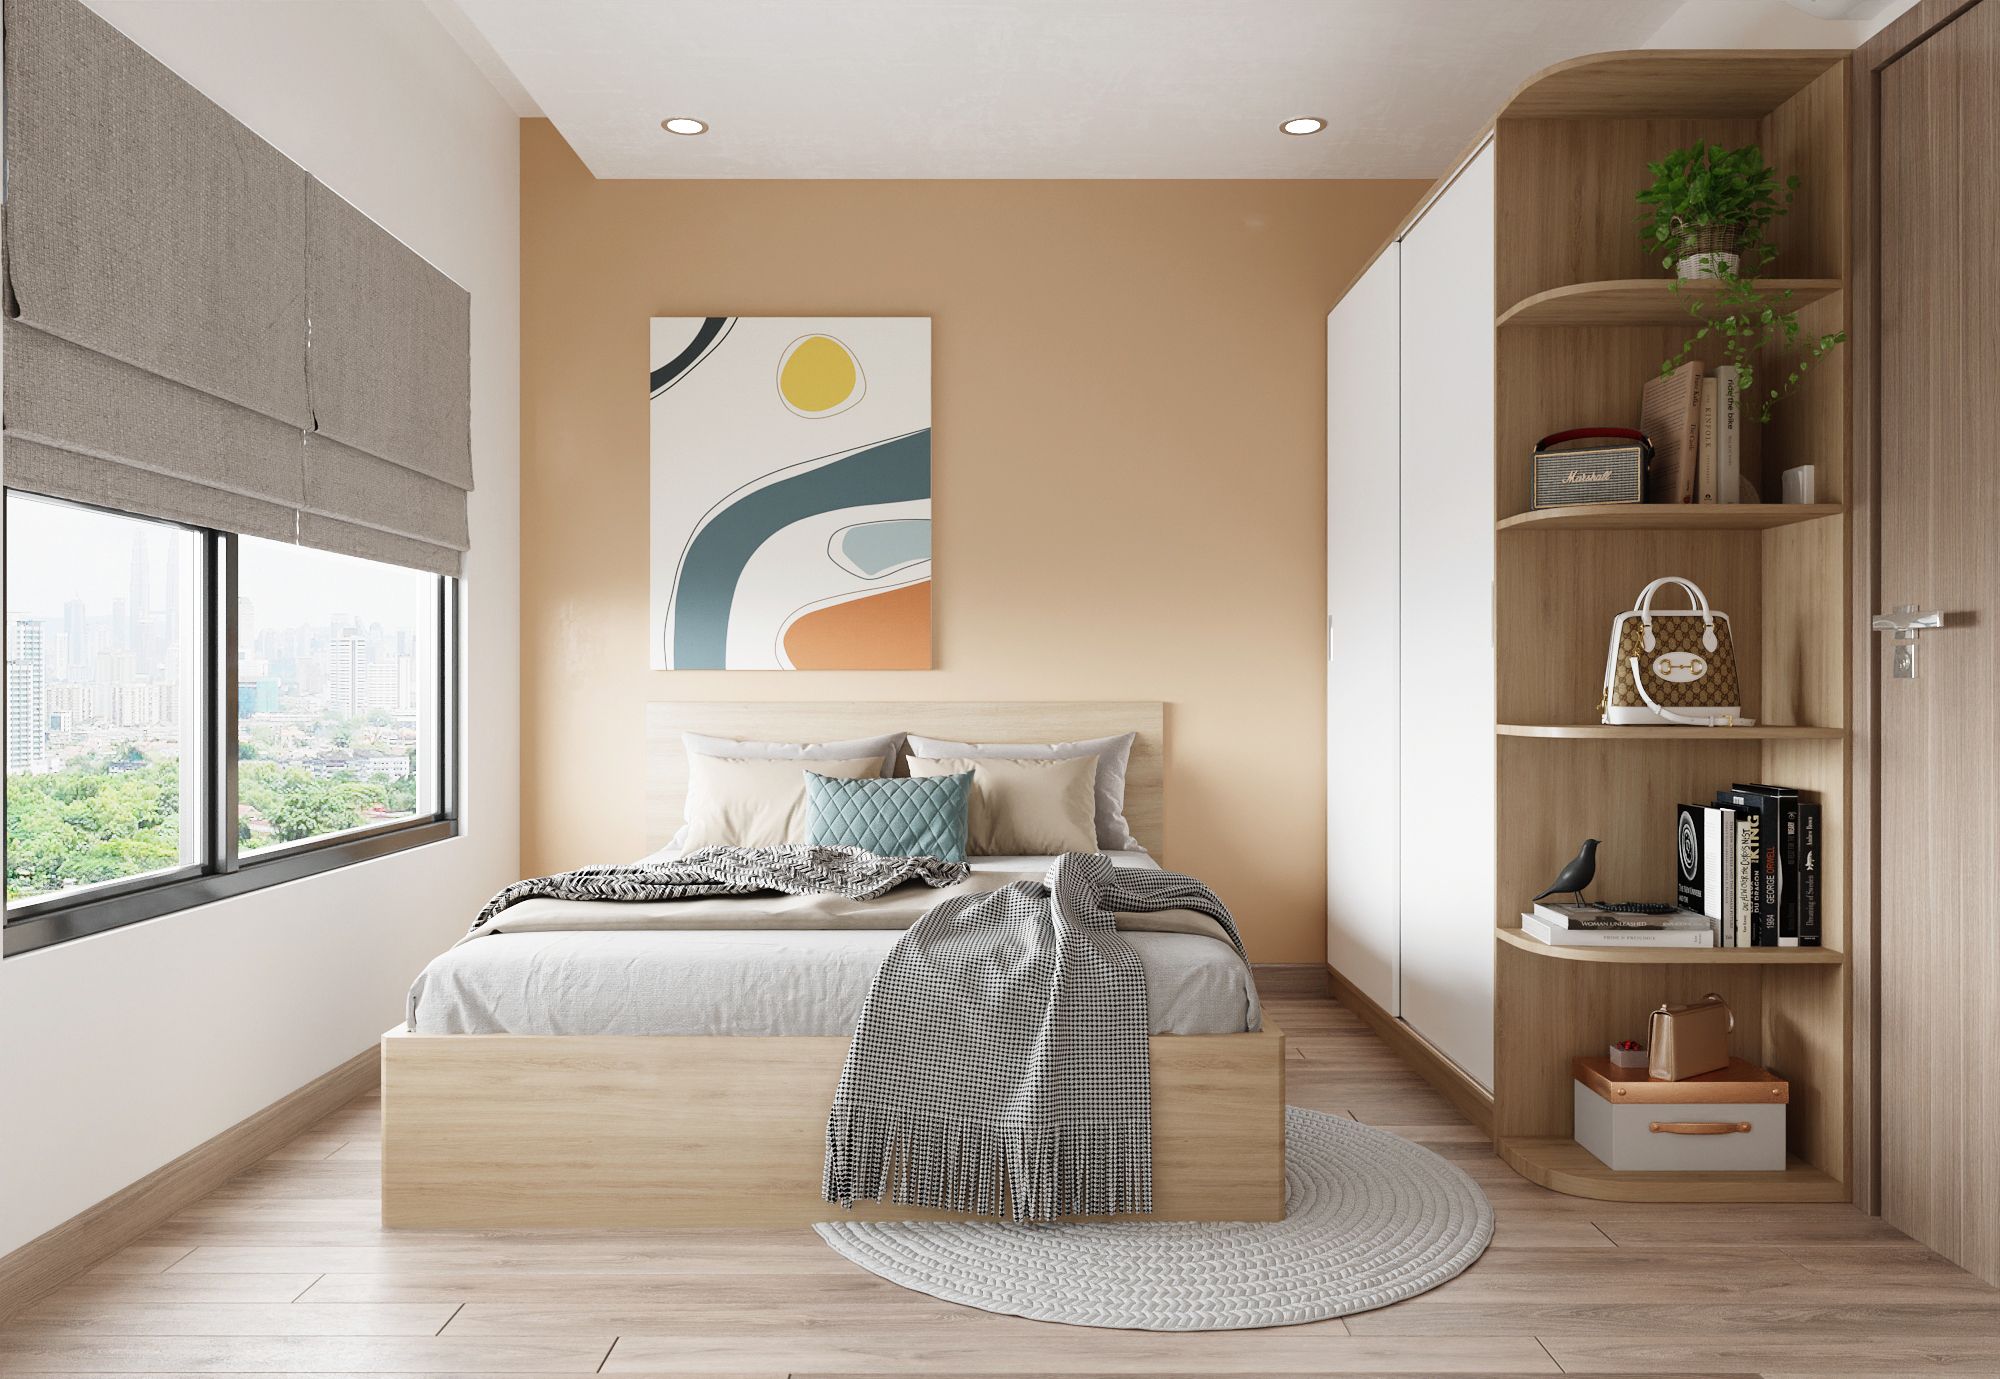 Sơn màu kem mang đến không gian phòng ngủ một cảm giác ấm áp và dịu dàng